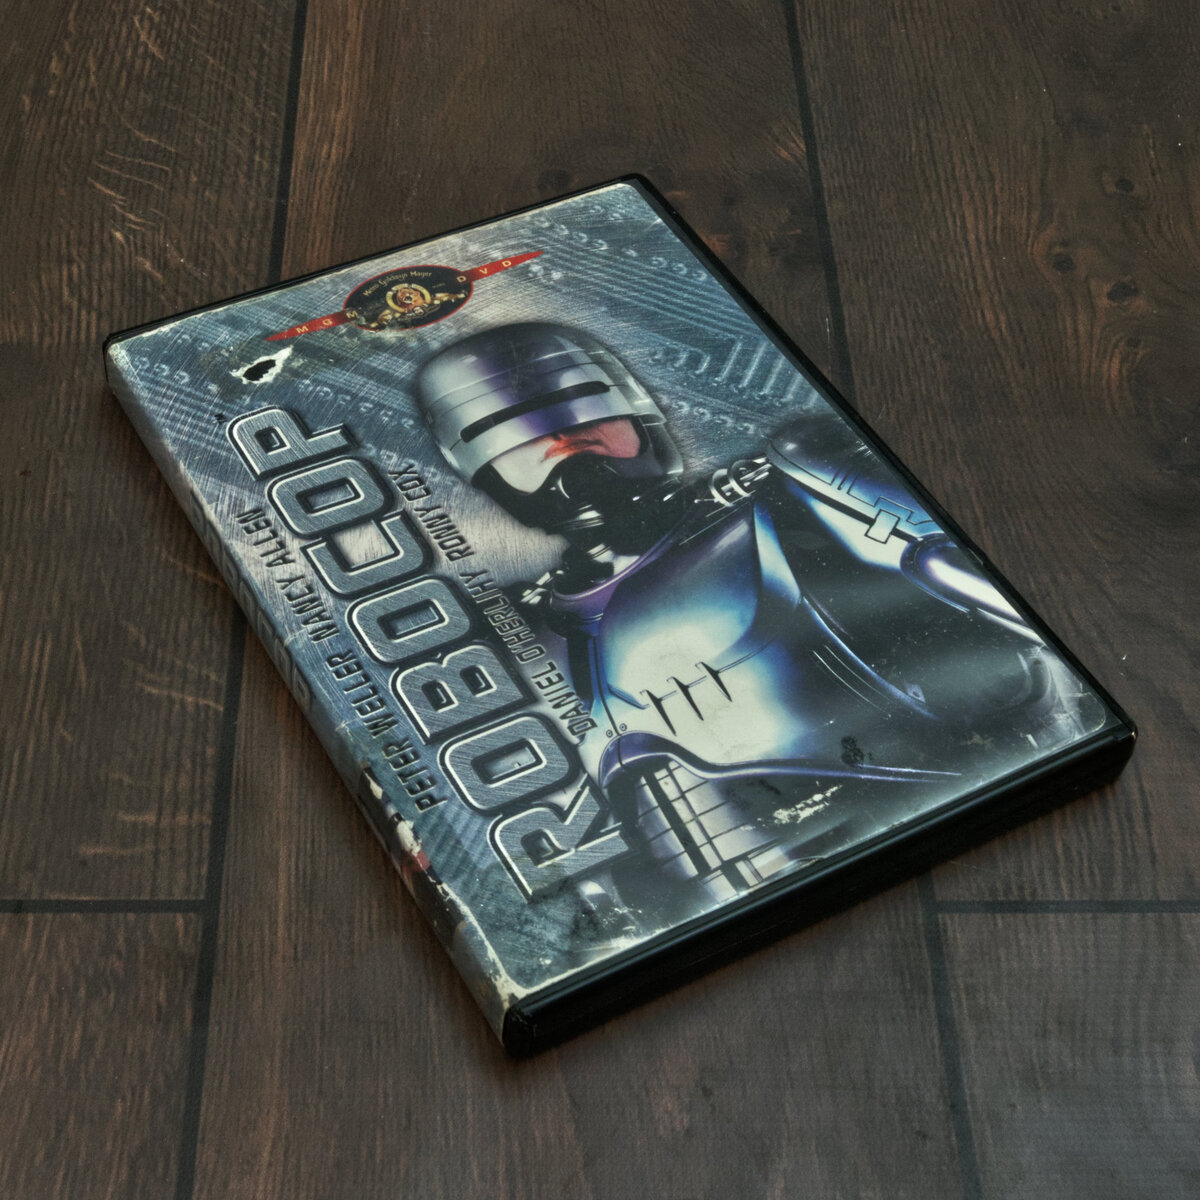 Robo Cop Movie DVD